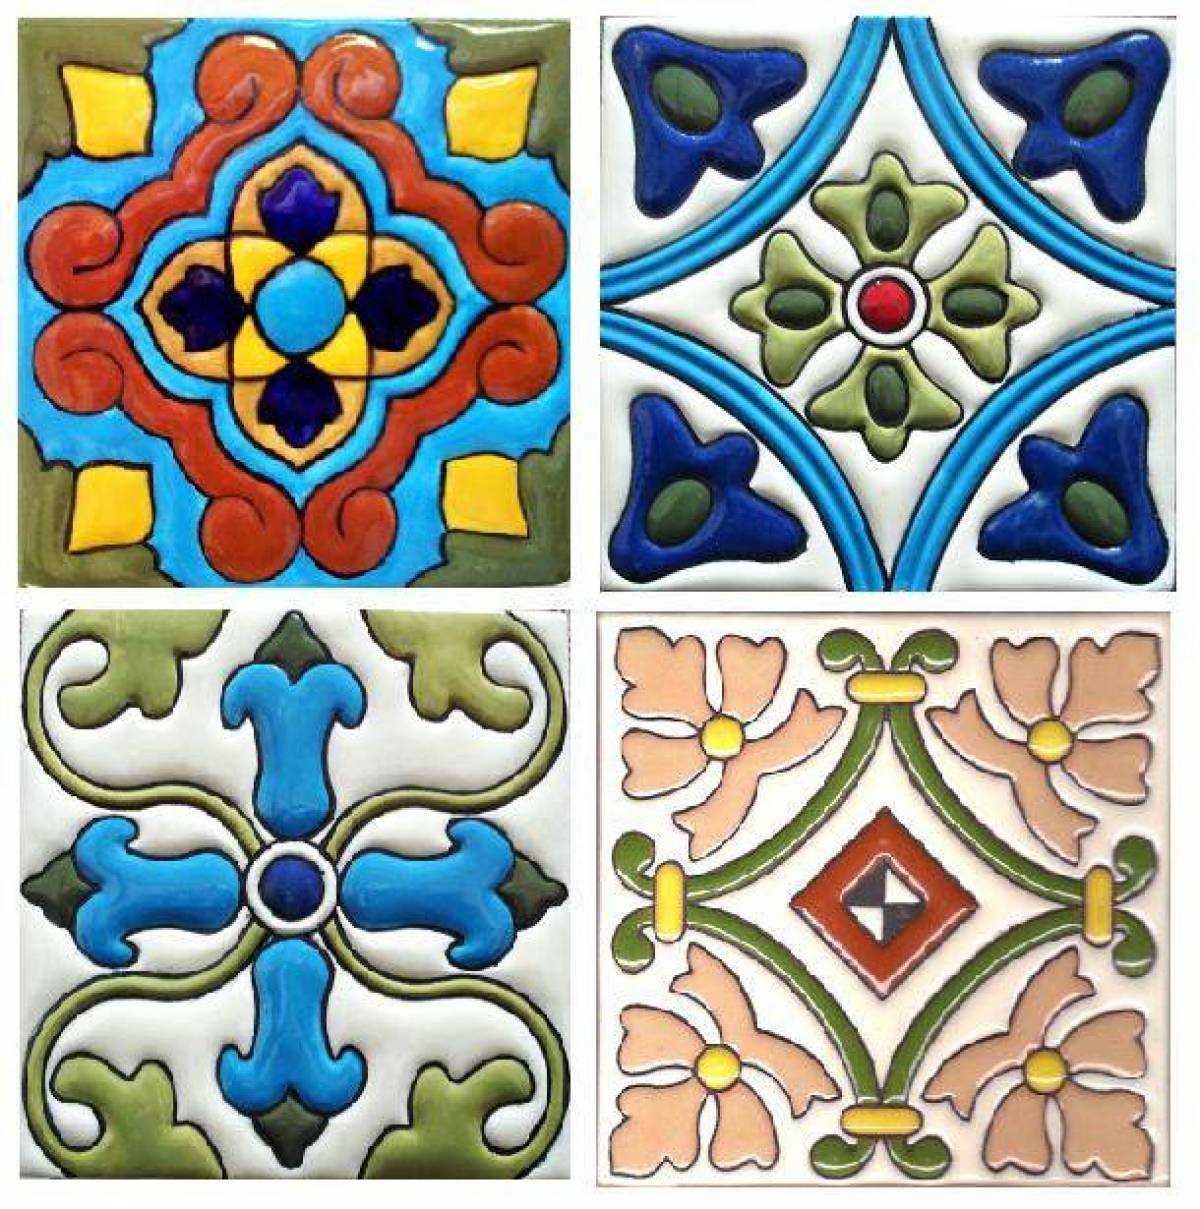 Coloring art ceramic tiles